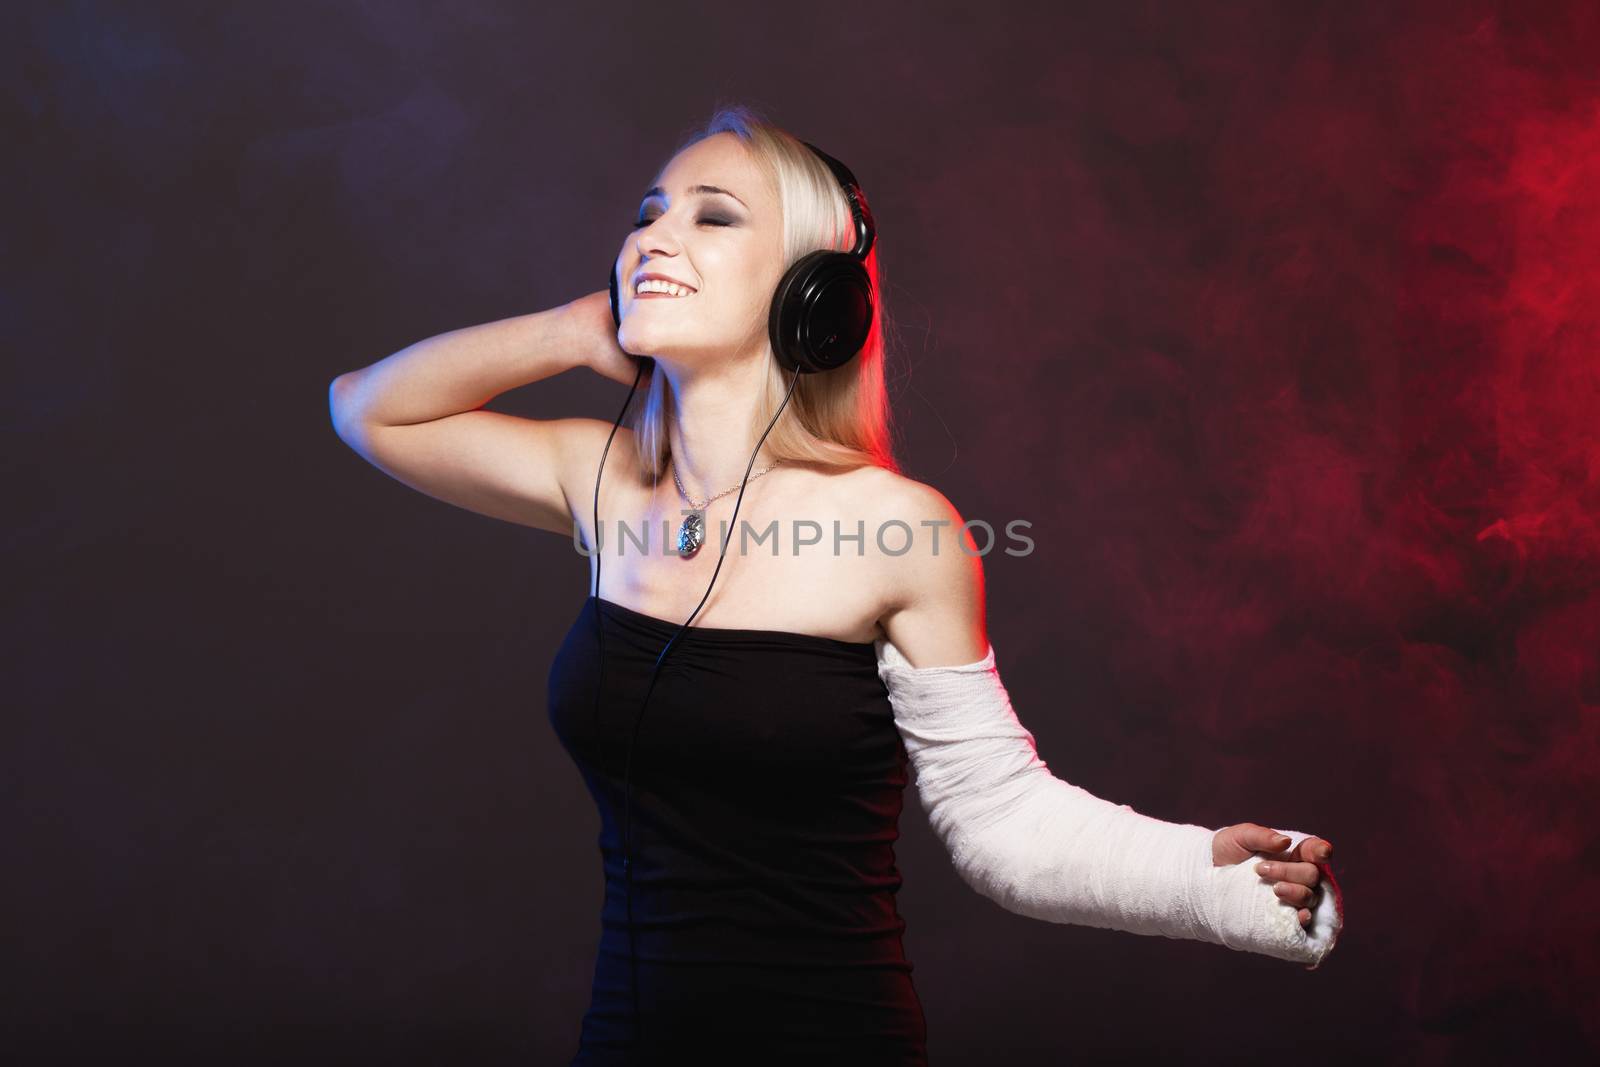 girl dancing with broken arm and headphones by kokimk